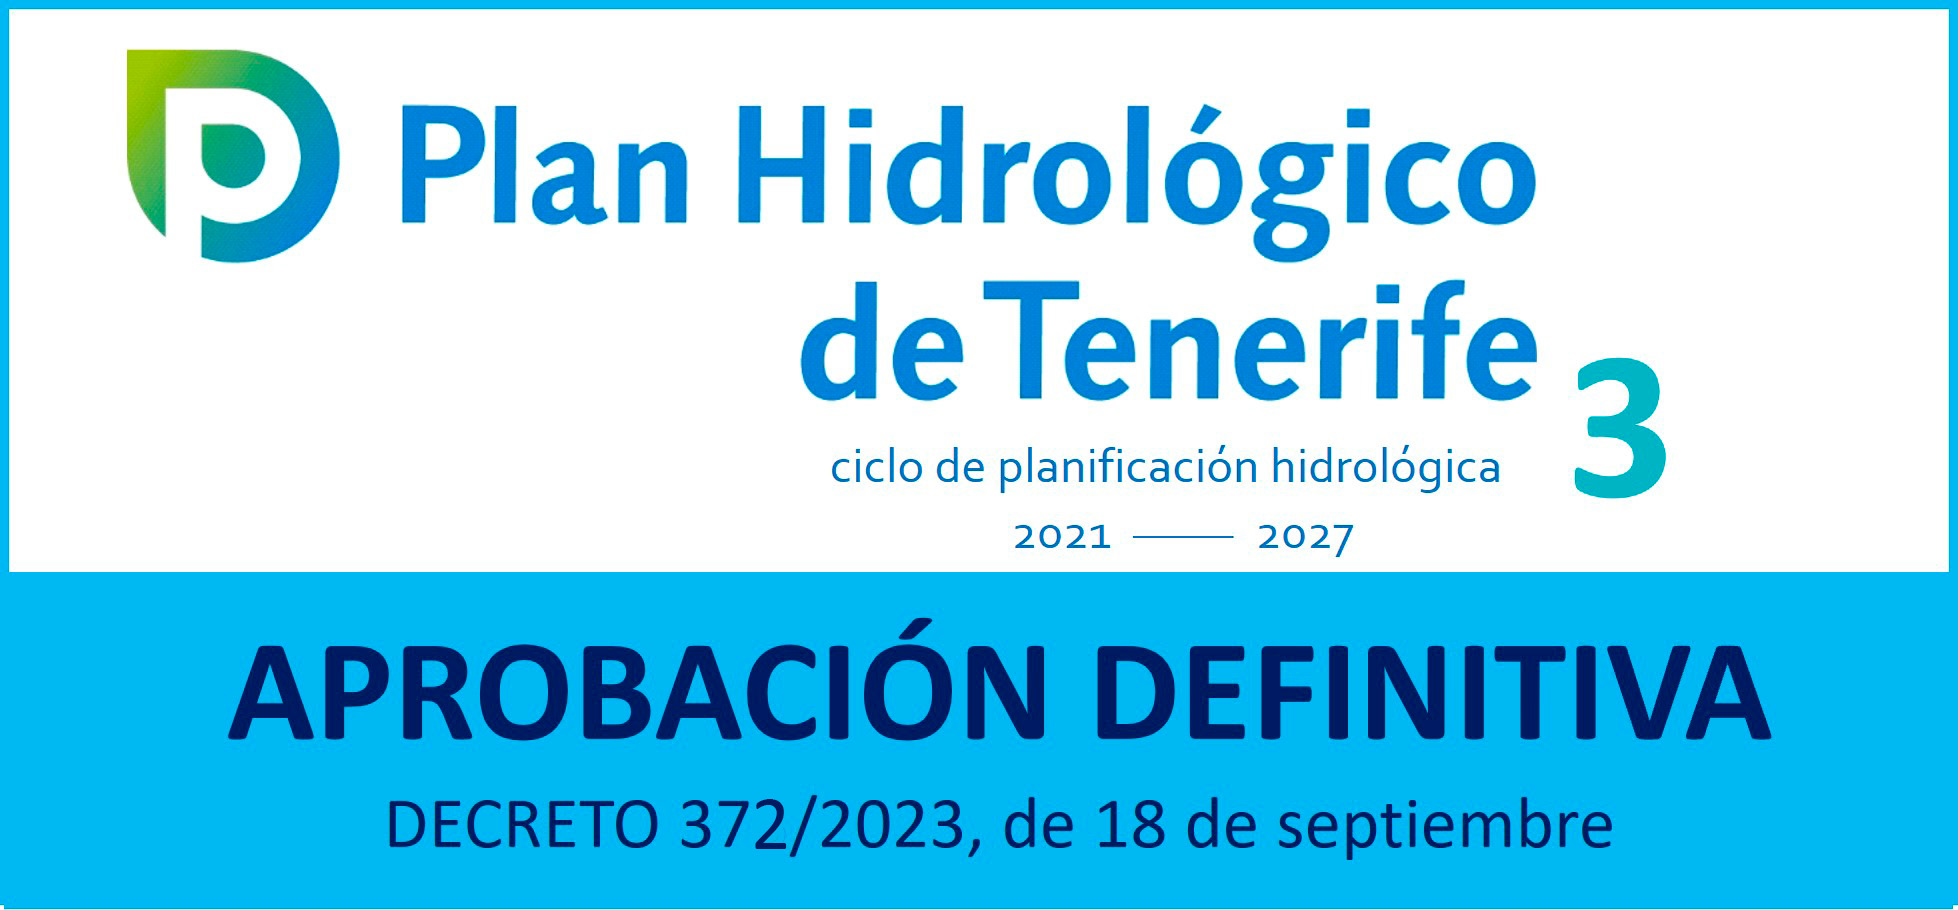 DECRETO 373/2023, de 18 de septiembre, por el que se aprueba definitivamente el Plan Hidrológico Insular de la Demarcación Hidrográfica de Tenerife, Tercer Ciclo (2021-2027). B.O.C. núm. 191 de 27 de septiembre de 2023